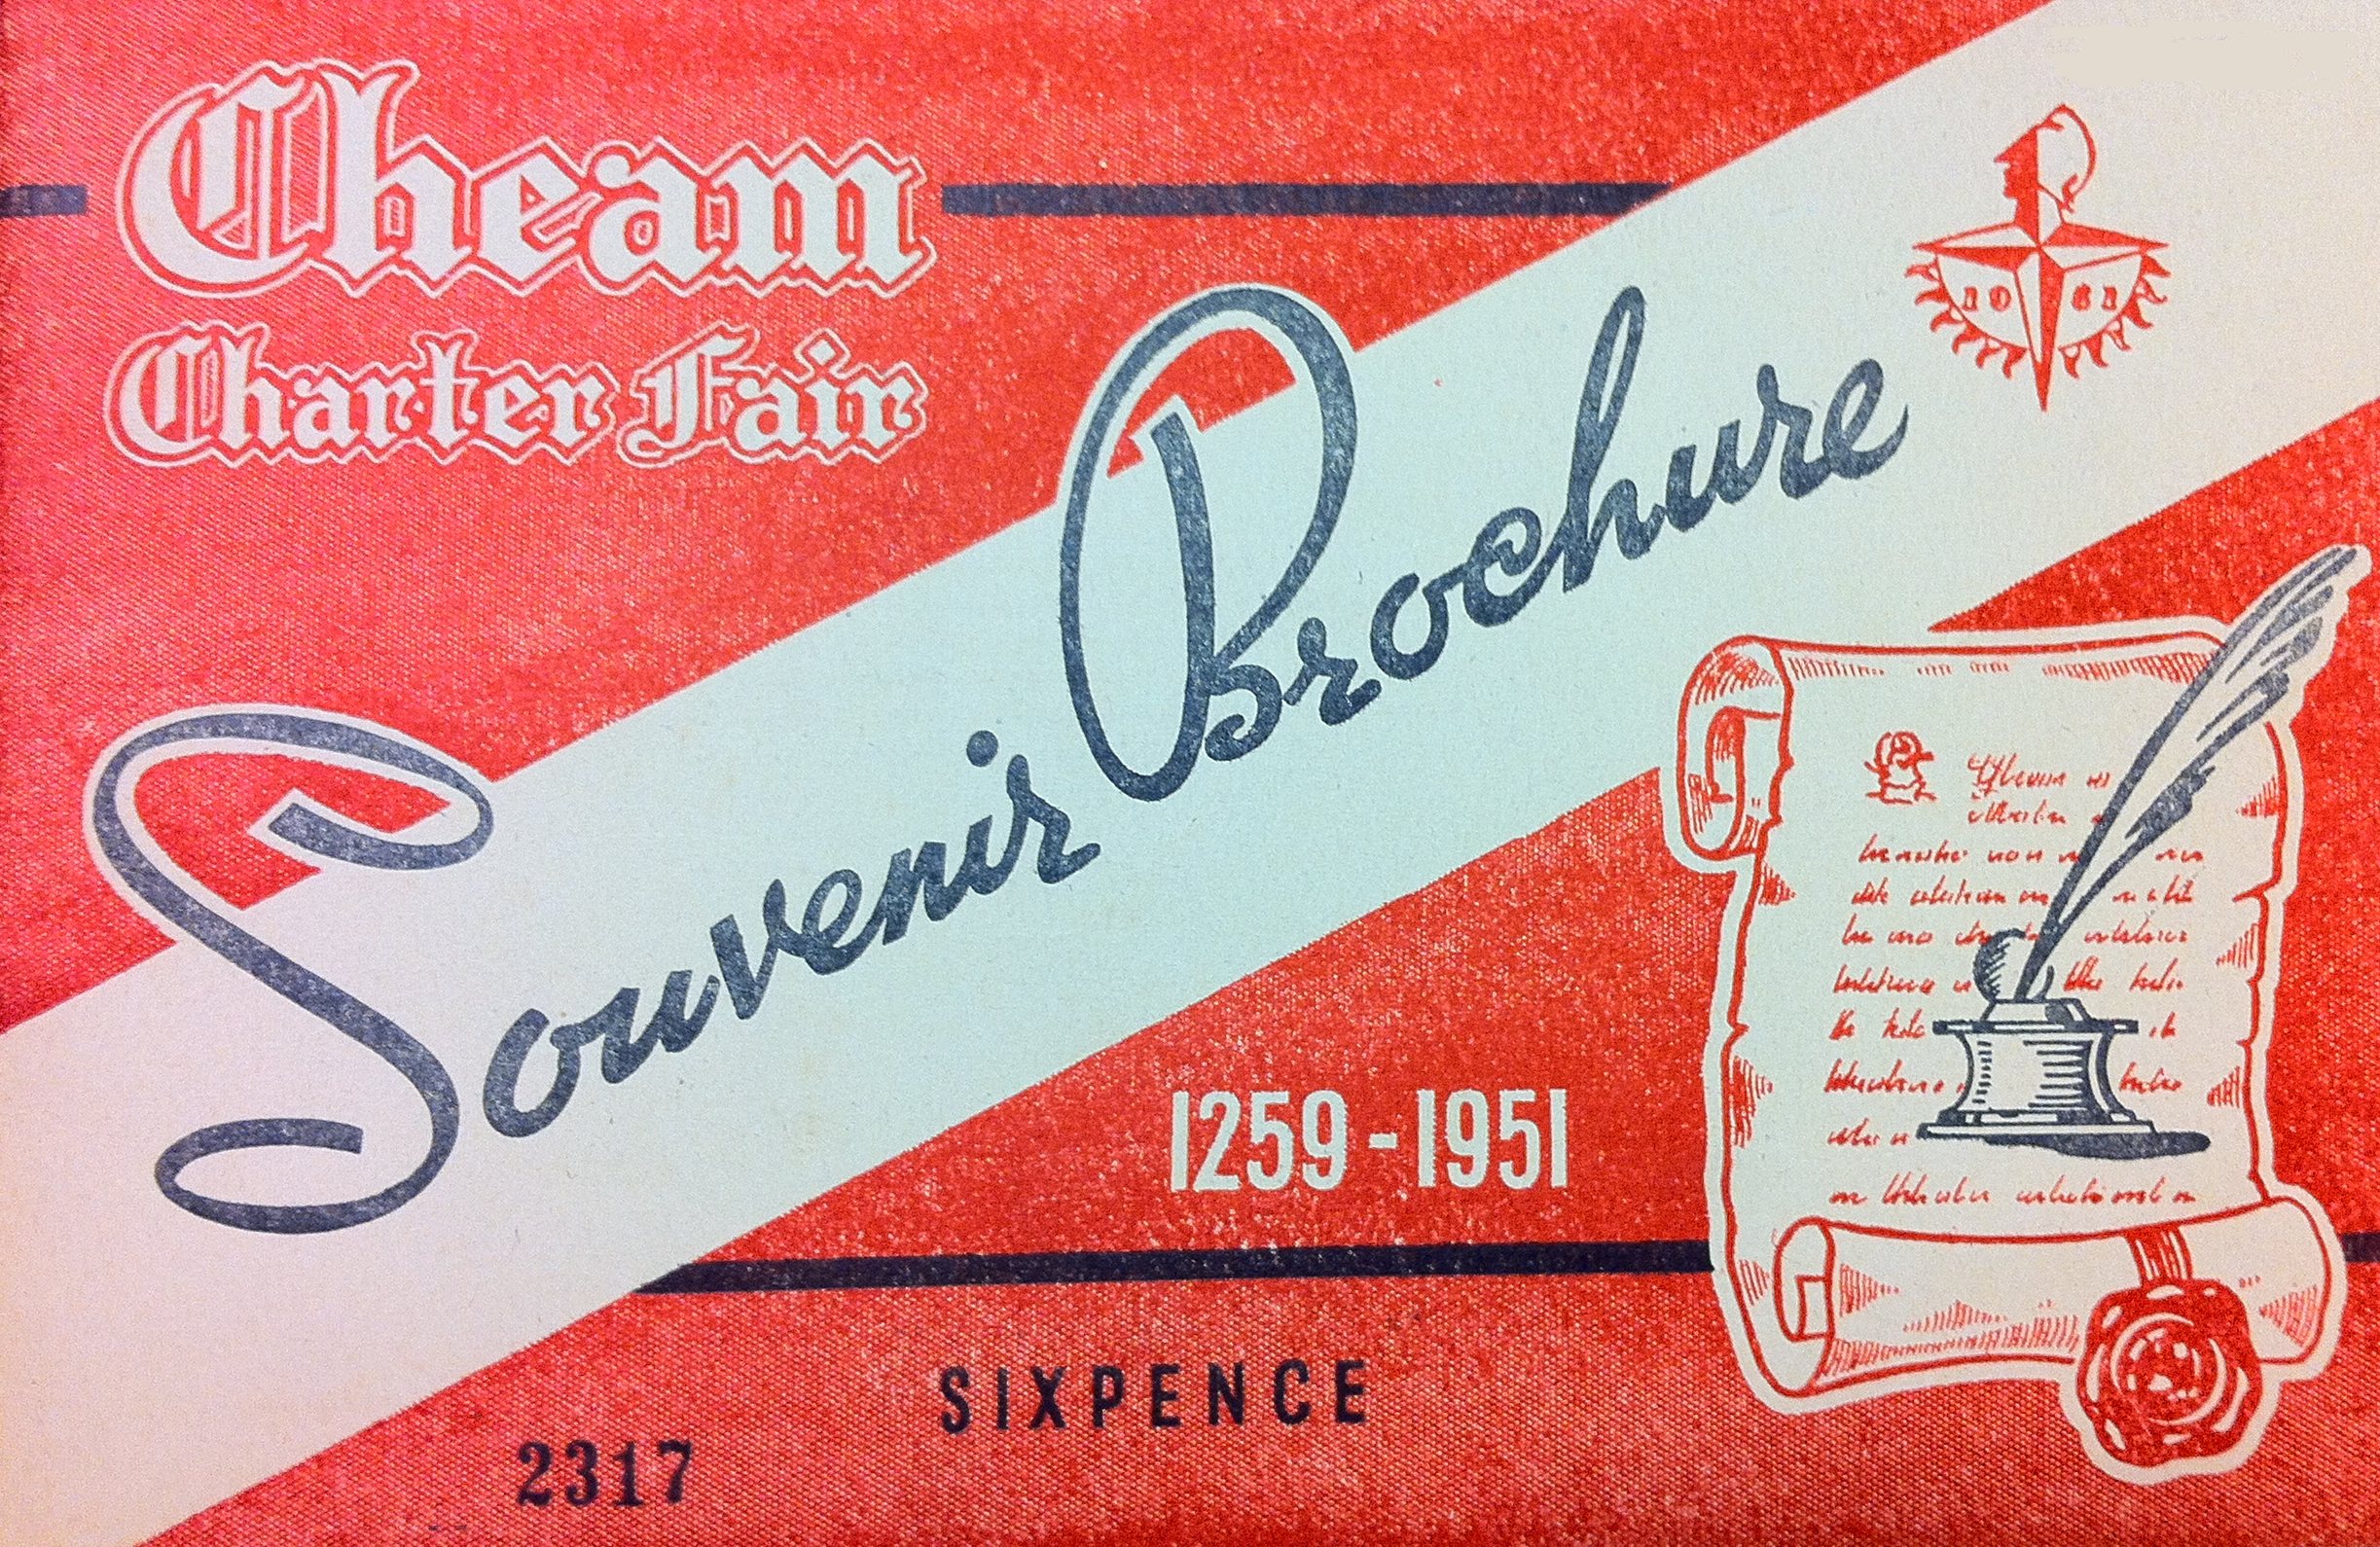 Cheam Charter Fair Souvenir Brochure 1951 cover